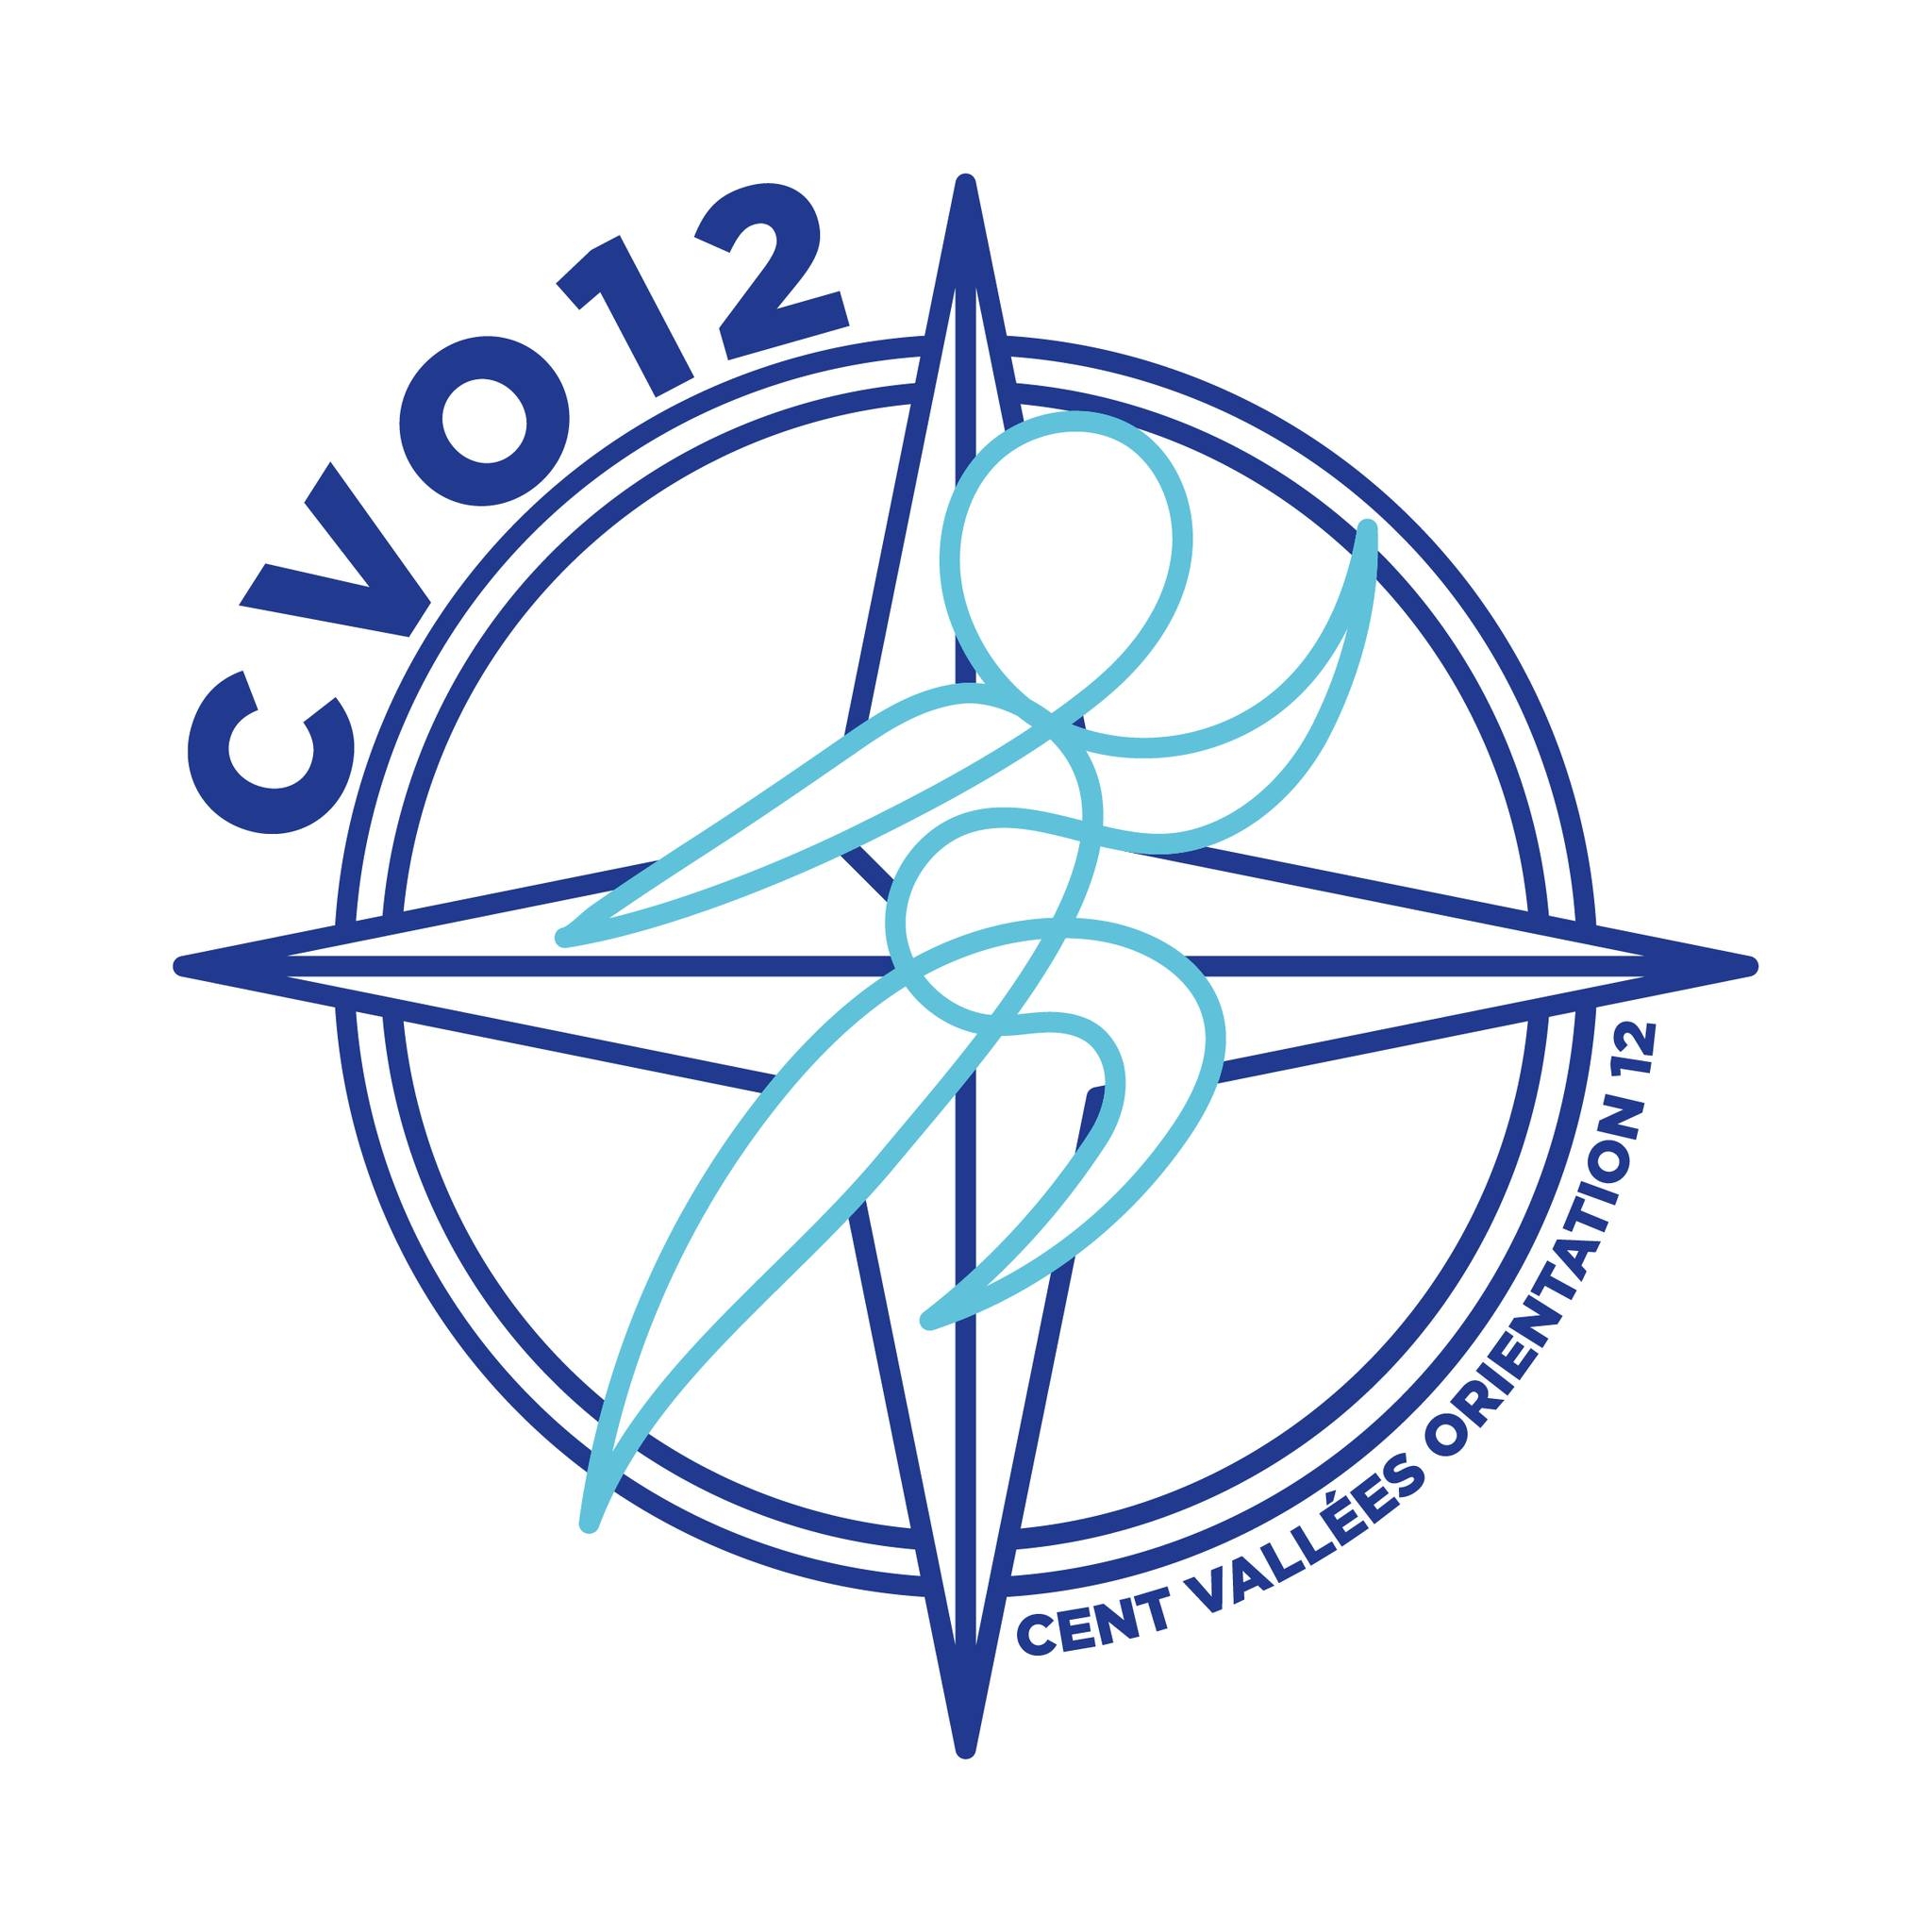 logo CVO